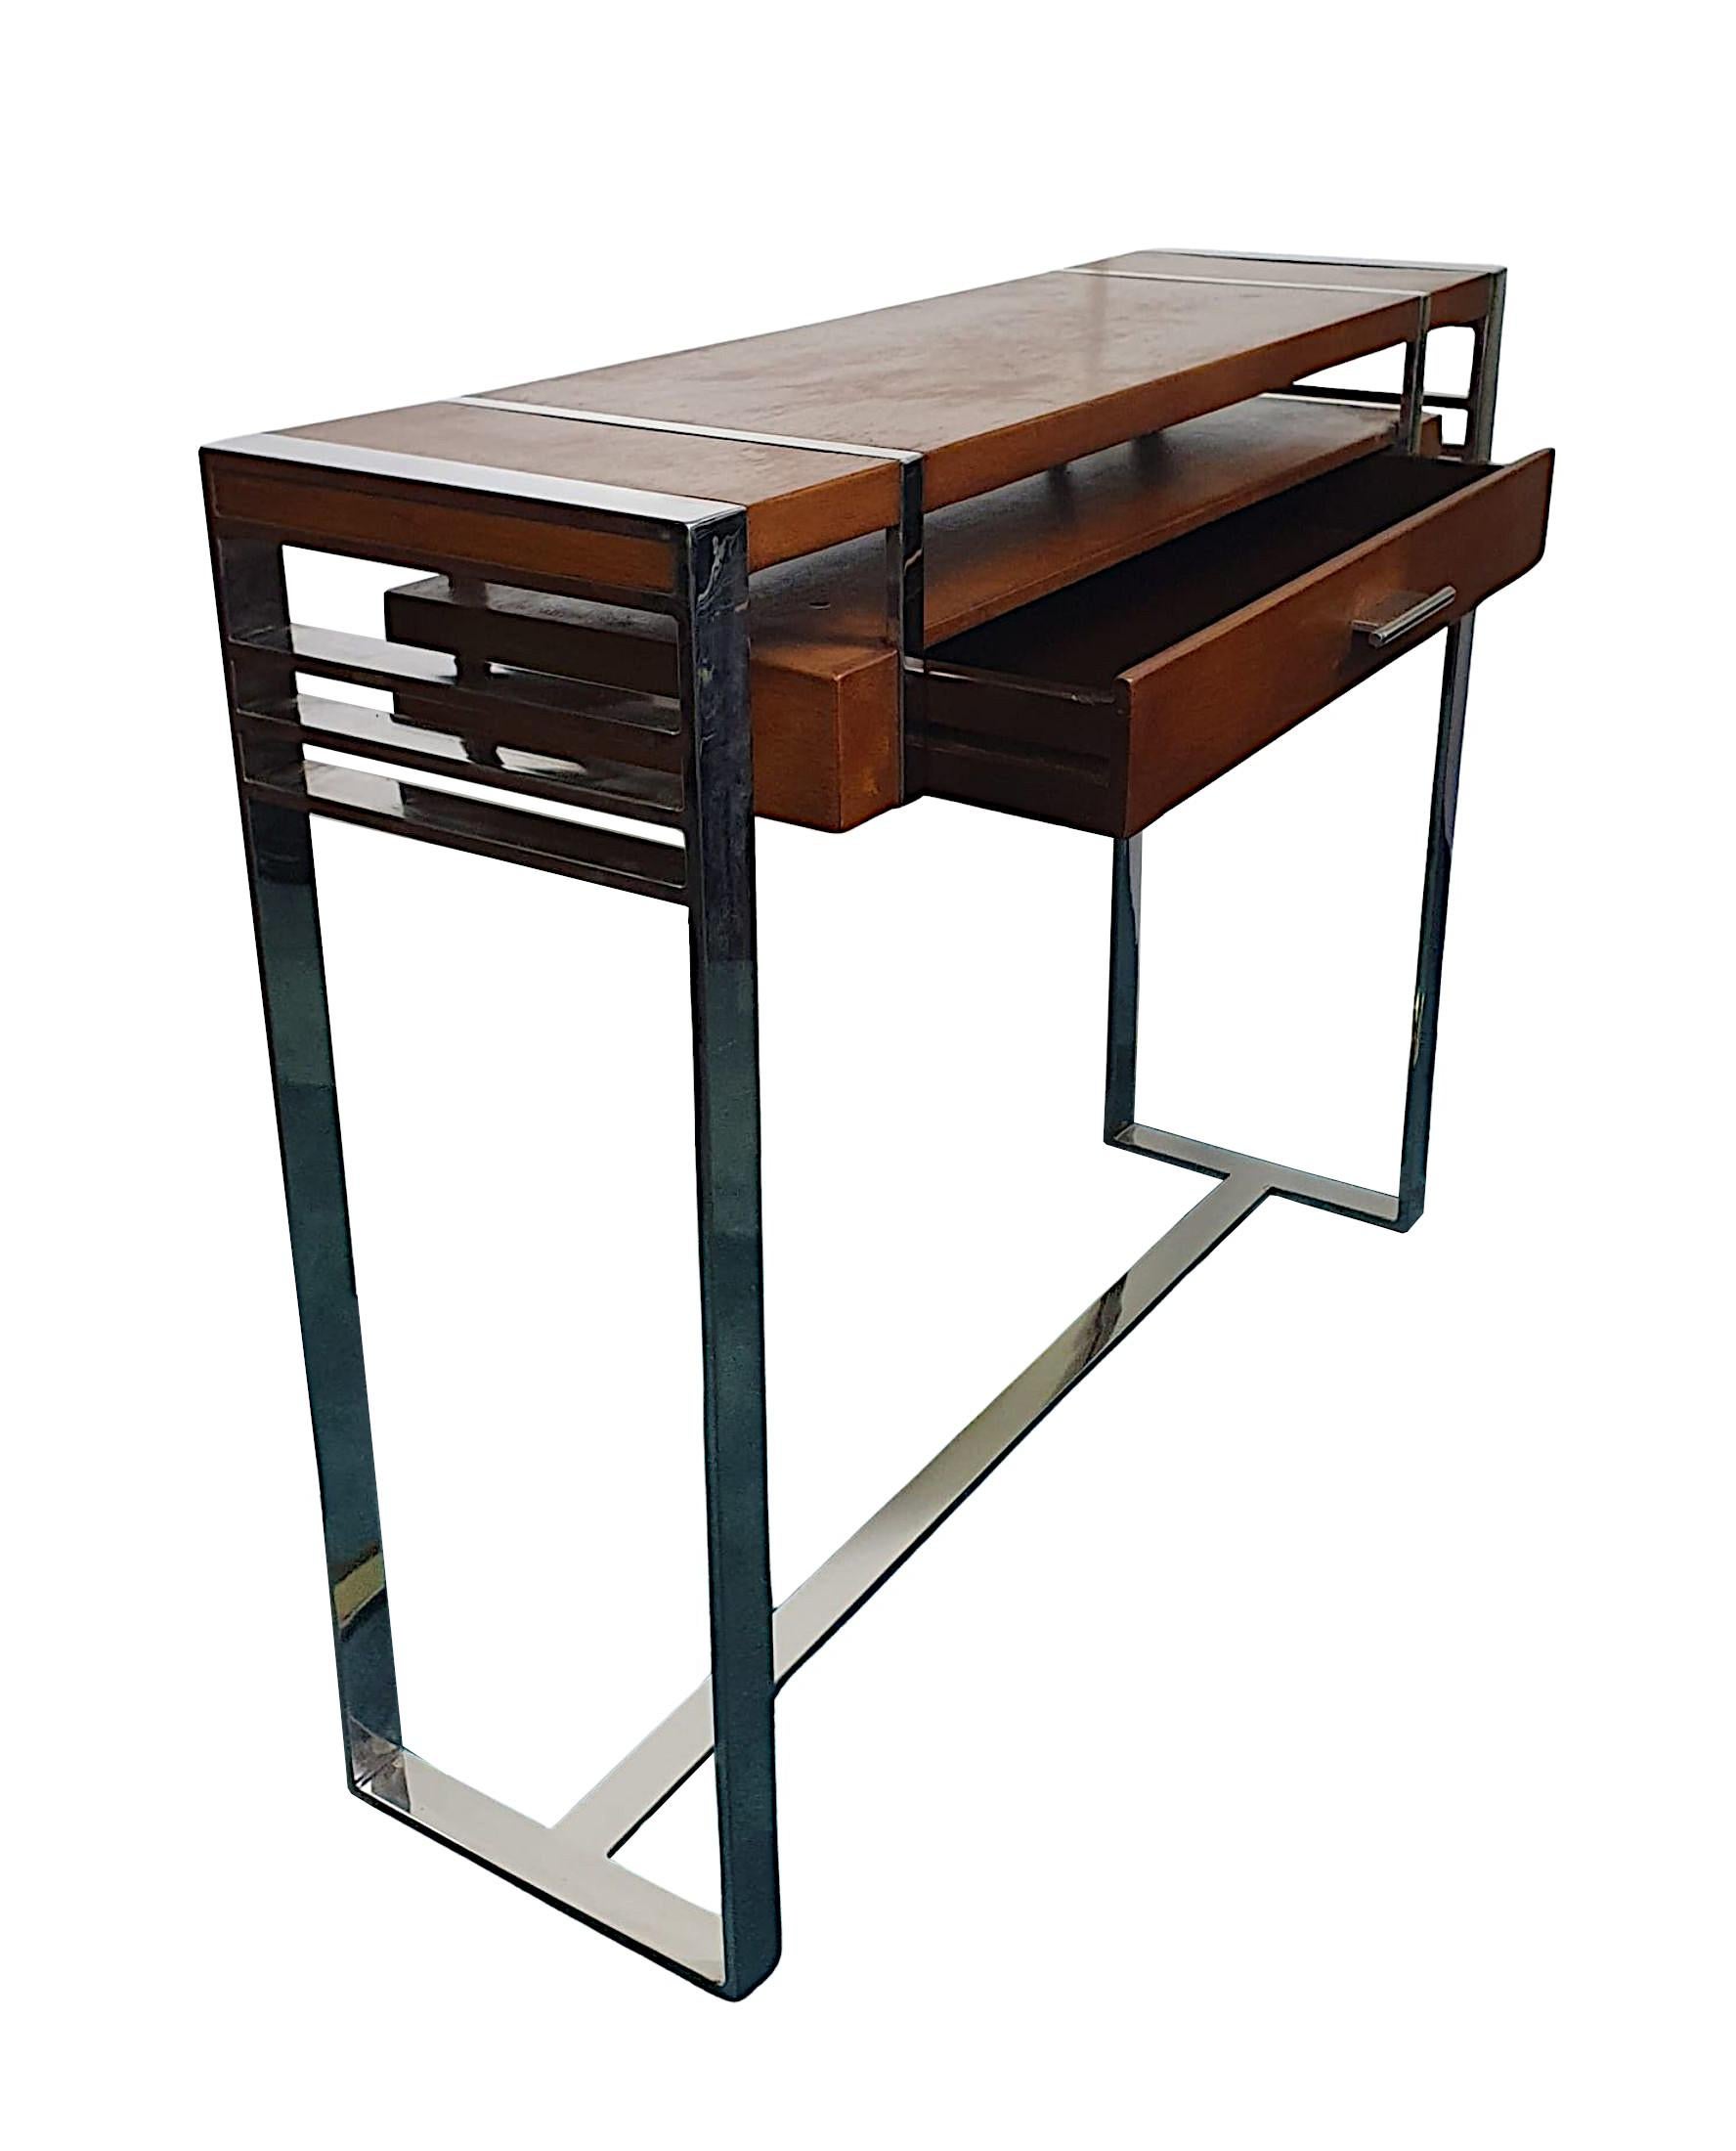 Una mesa consola de madera de cerezo ricamente patinada, de diseño Art Decó del siglo XX, de proporciones cuidadas, fabulosa calidad y finamente tallada, con un diseño limpio y sencillo.  La tapa, bien labrada y con molduras cromadas, se eleva sobre